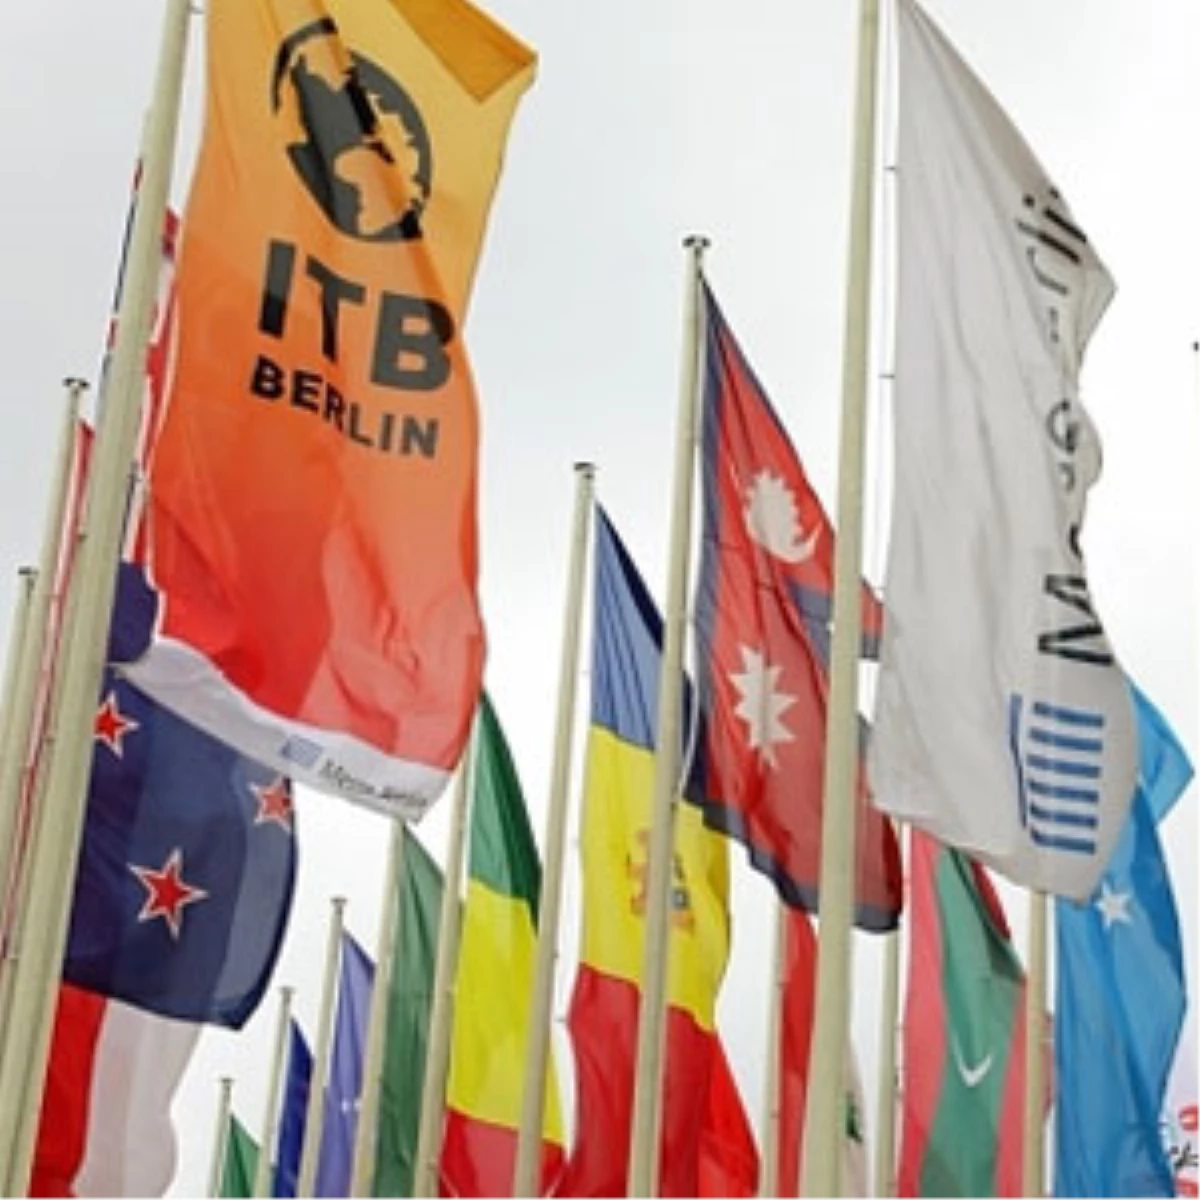 Itb Berlin Turizm Fuarı 113 Bin Kişi Tarafından Ziyaret Edildi